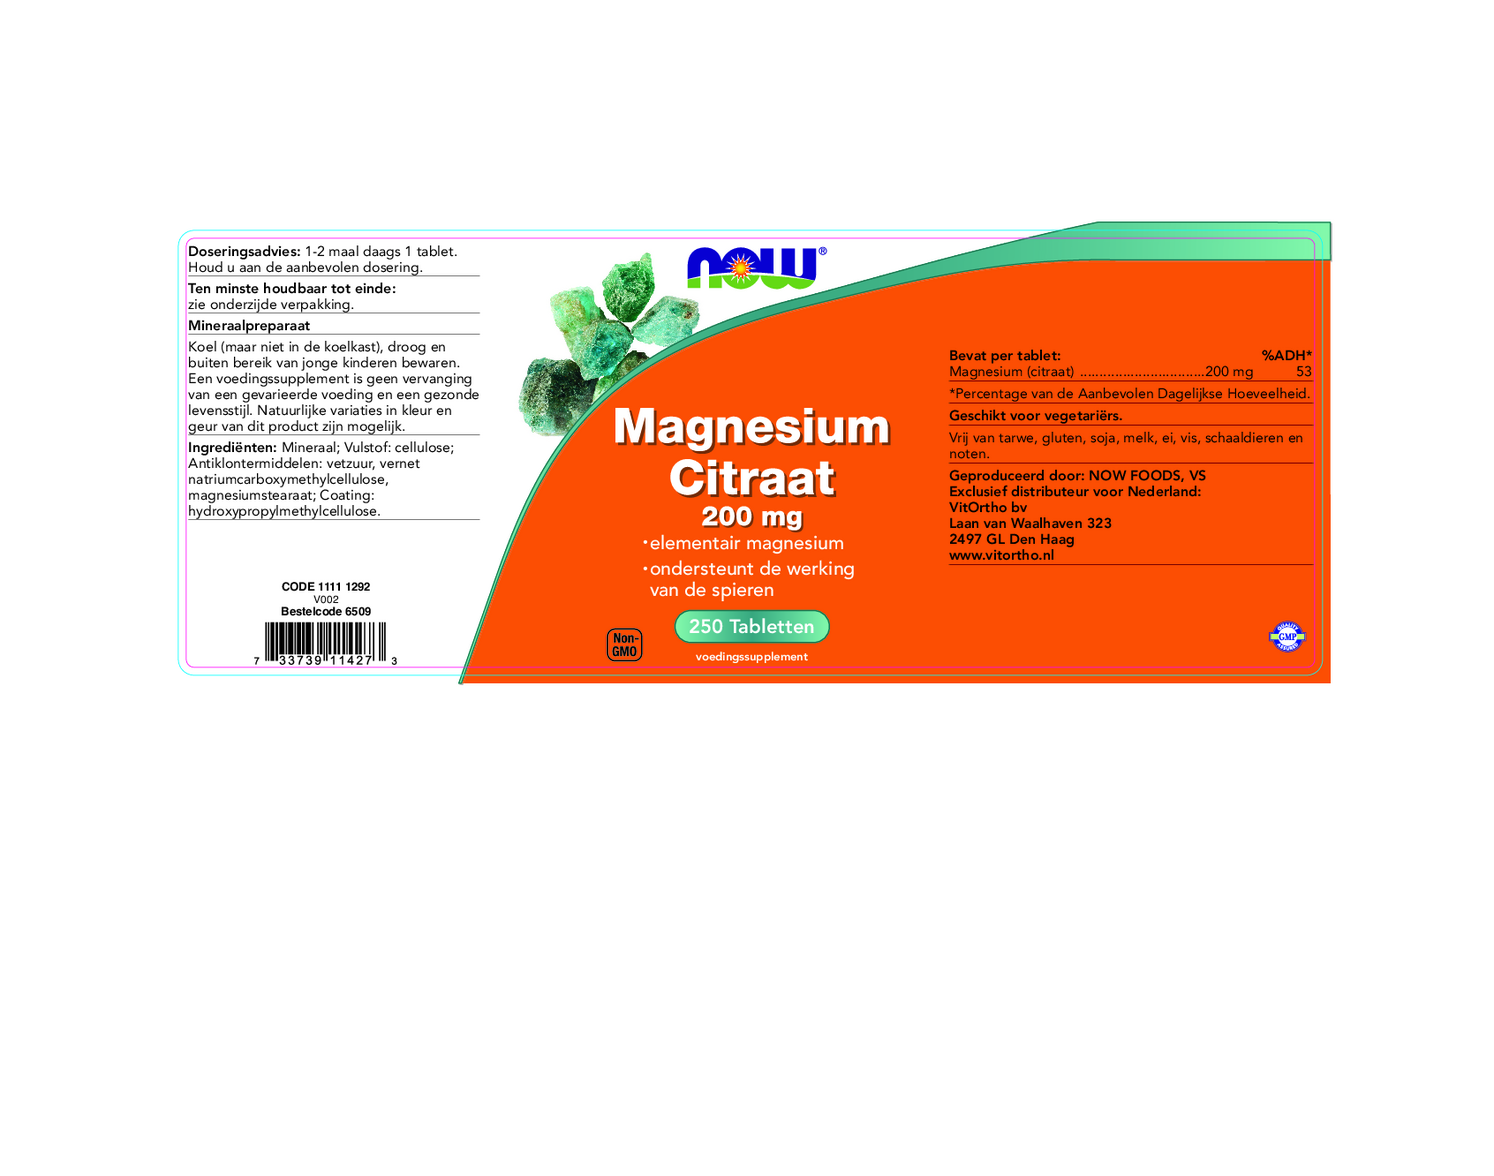 Magnesium Citraat 200mg Tabletten afbeelding van document #1, etiket